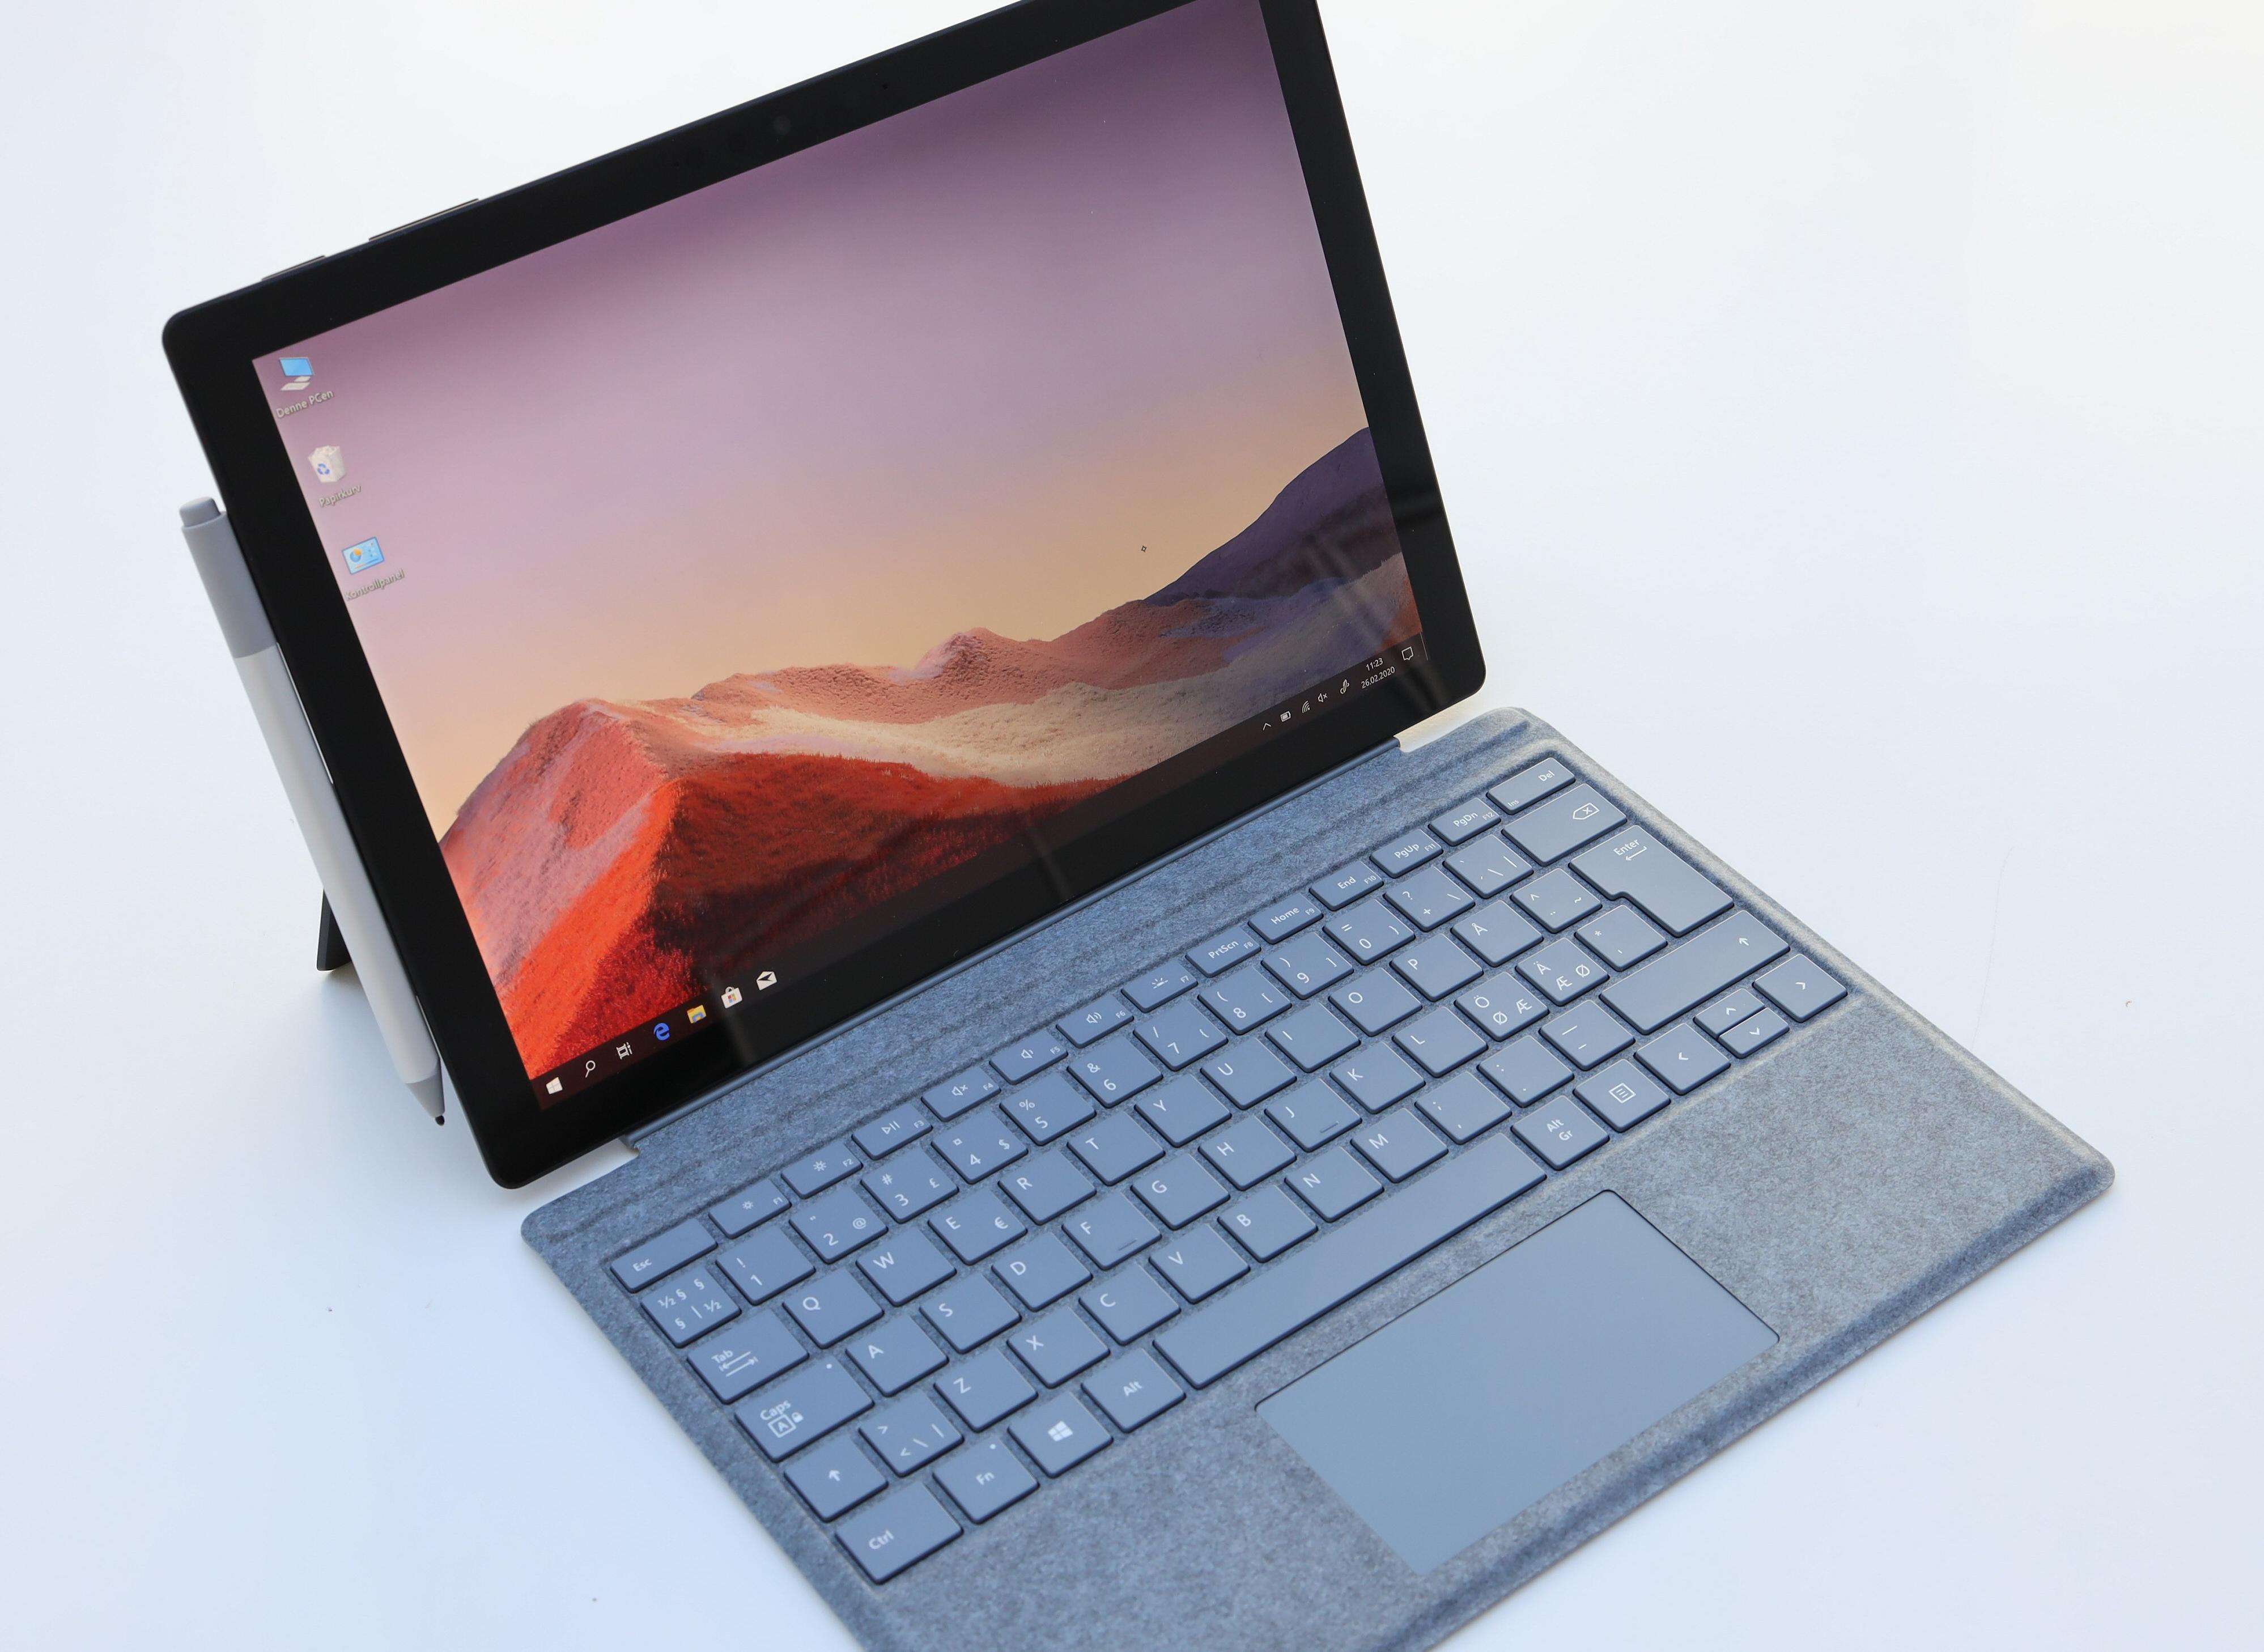 Windows-nettbrettet de fleste kanskje har sett - en Microsoft Surface Pro. Disse er utmerkede til å jobbe på og har nærmest satt standarden for svært kompakte fullfunksjons PC-er. Men gaming har ikke vært på listen over styrker.